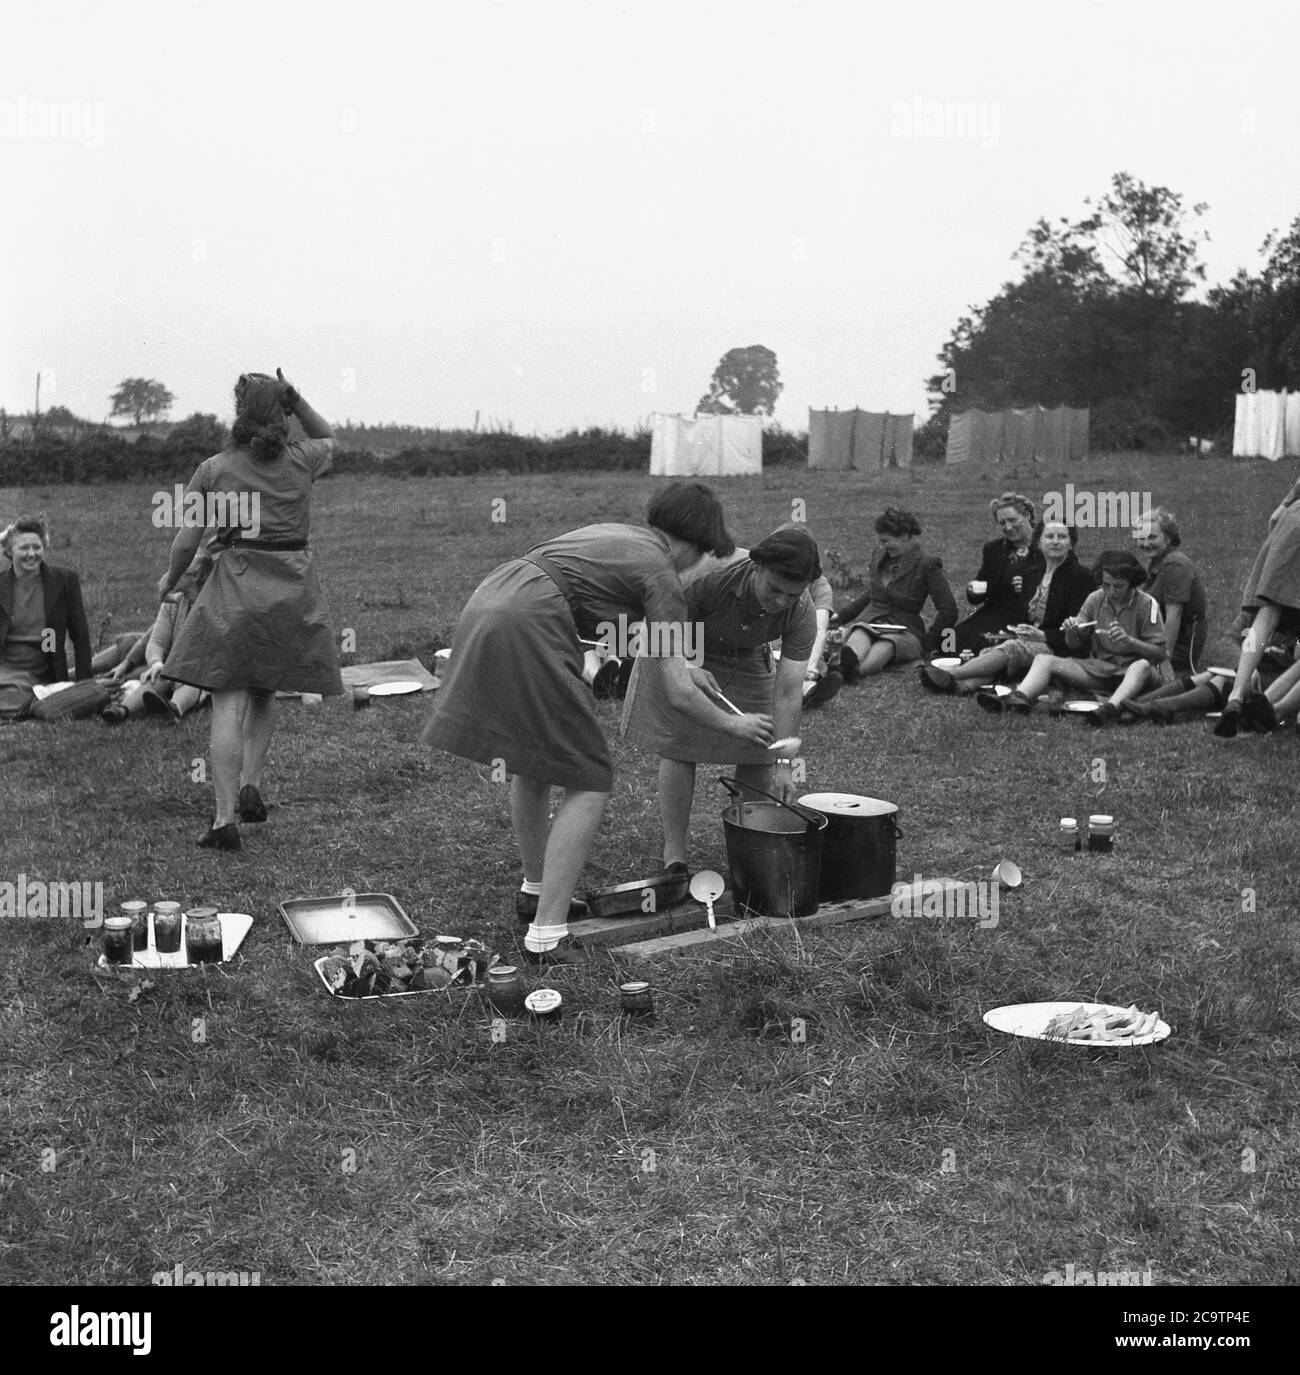 1950s, historisch, Mädchen Führer im Lager, mit Besuchern, möglicherweise Familienmitglieder, mit zwei Führungen servieren Tassen possiby Suppe aus großen Stahlschalen, mit Scheiben von Brot, Kuchen und Marmelade auf dem Gras, England, Großbritannien. Stockfoto